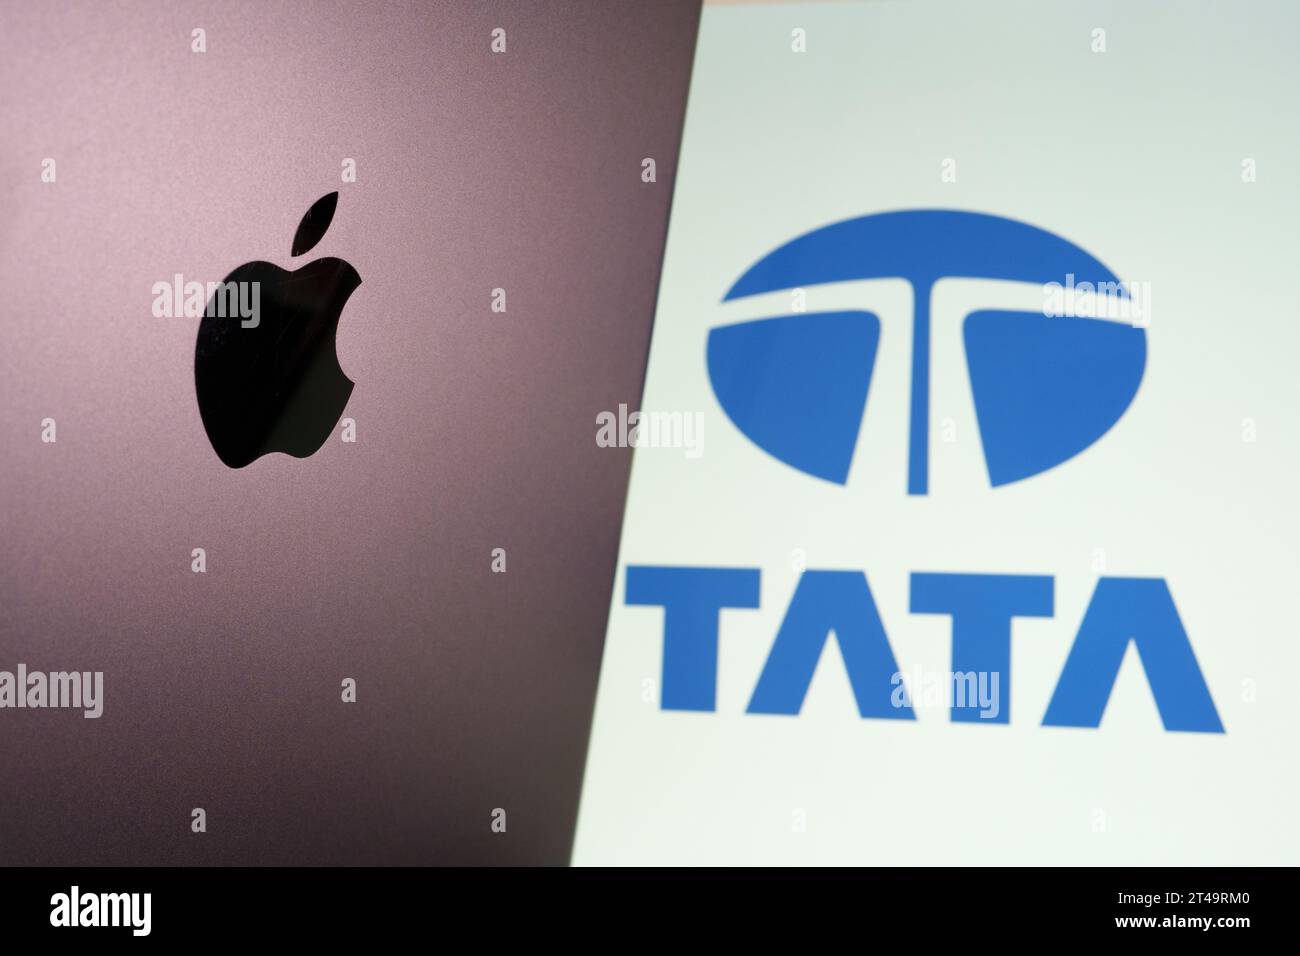 Logo Apple vu sur iPad et logo flou du groupe Tata vu sur l'écran de l'ordinateur portable. Tata va commencer à fabriquer des iPhones en Inde. Stafford, Royaume-Uni, oct Banque D'Images